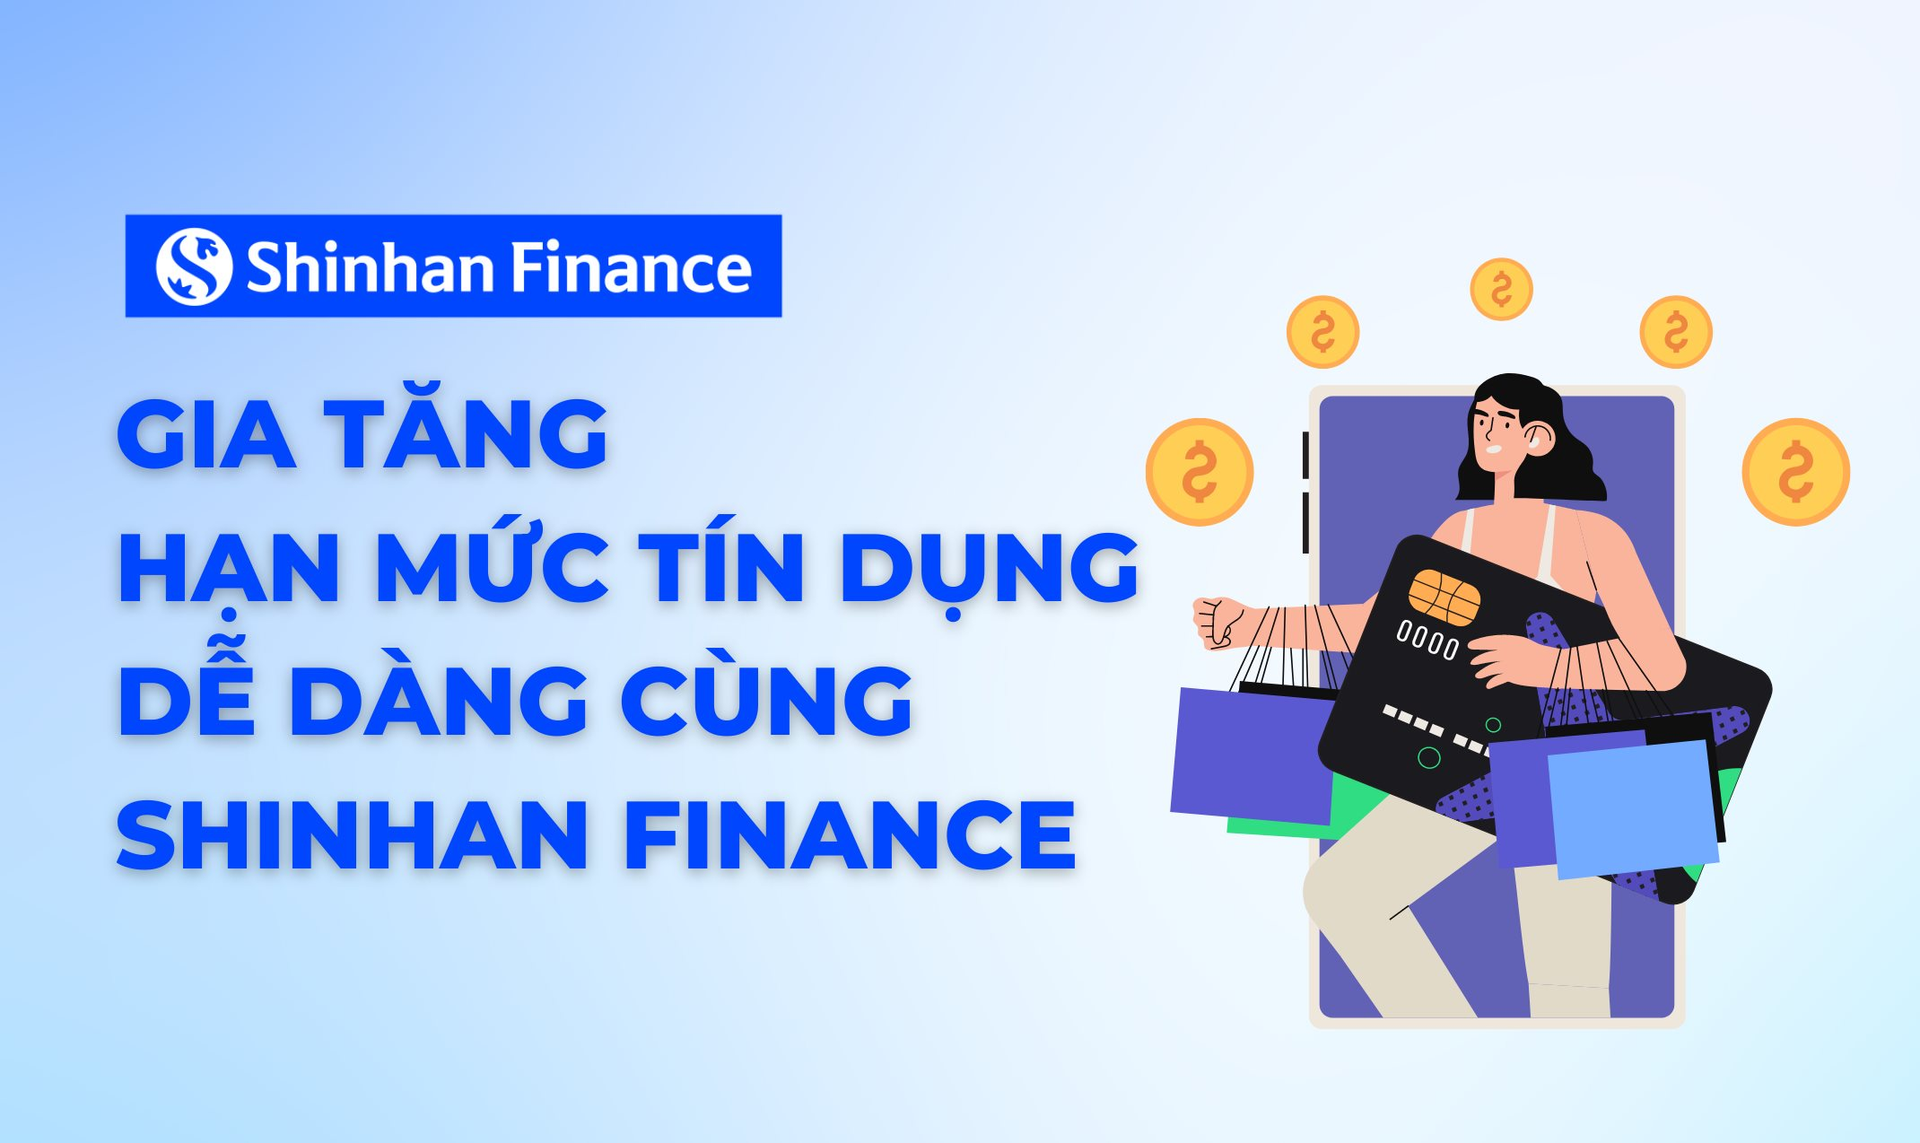 gia-tang-han-muc-tin-dung-de-dang-cung-shinhan-finance.png